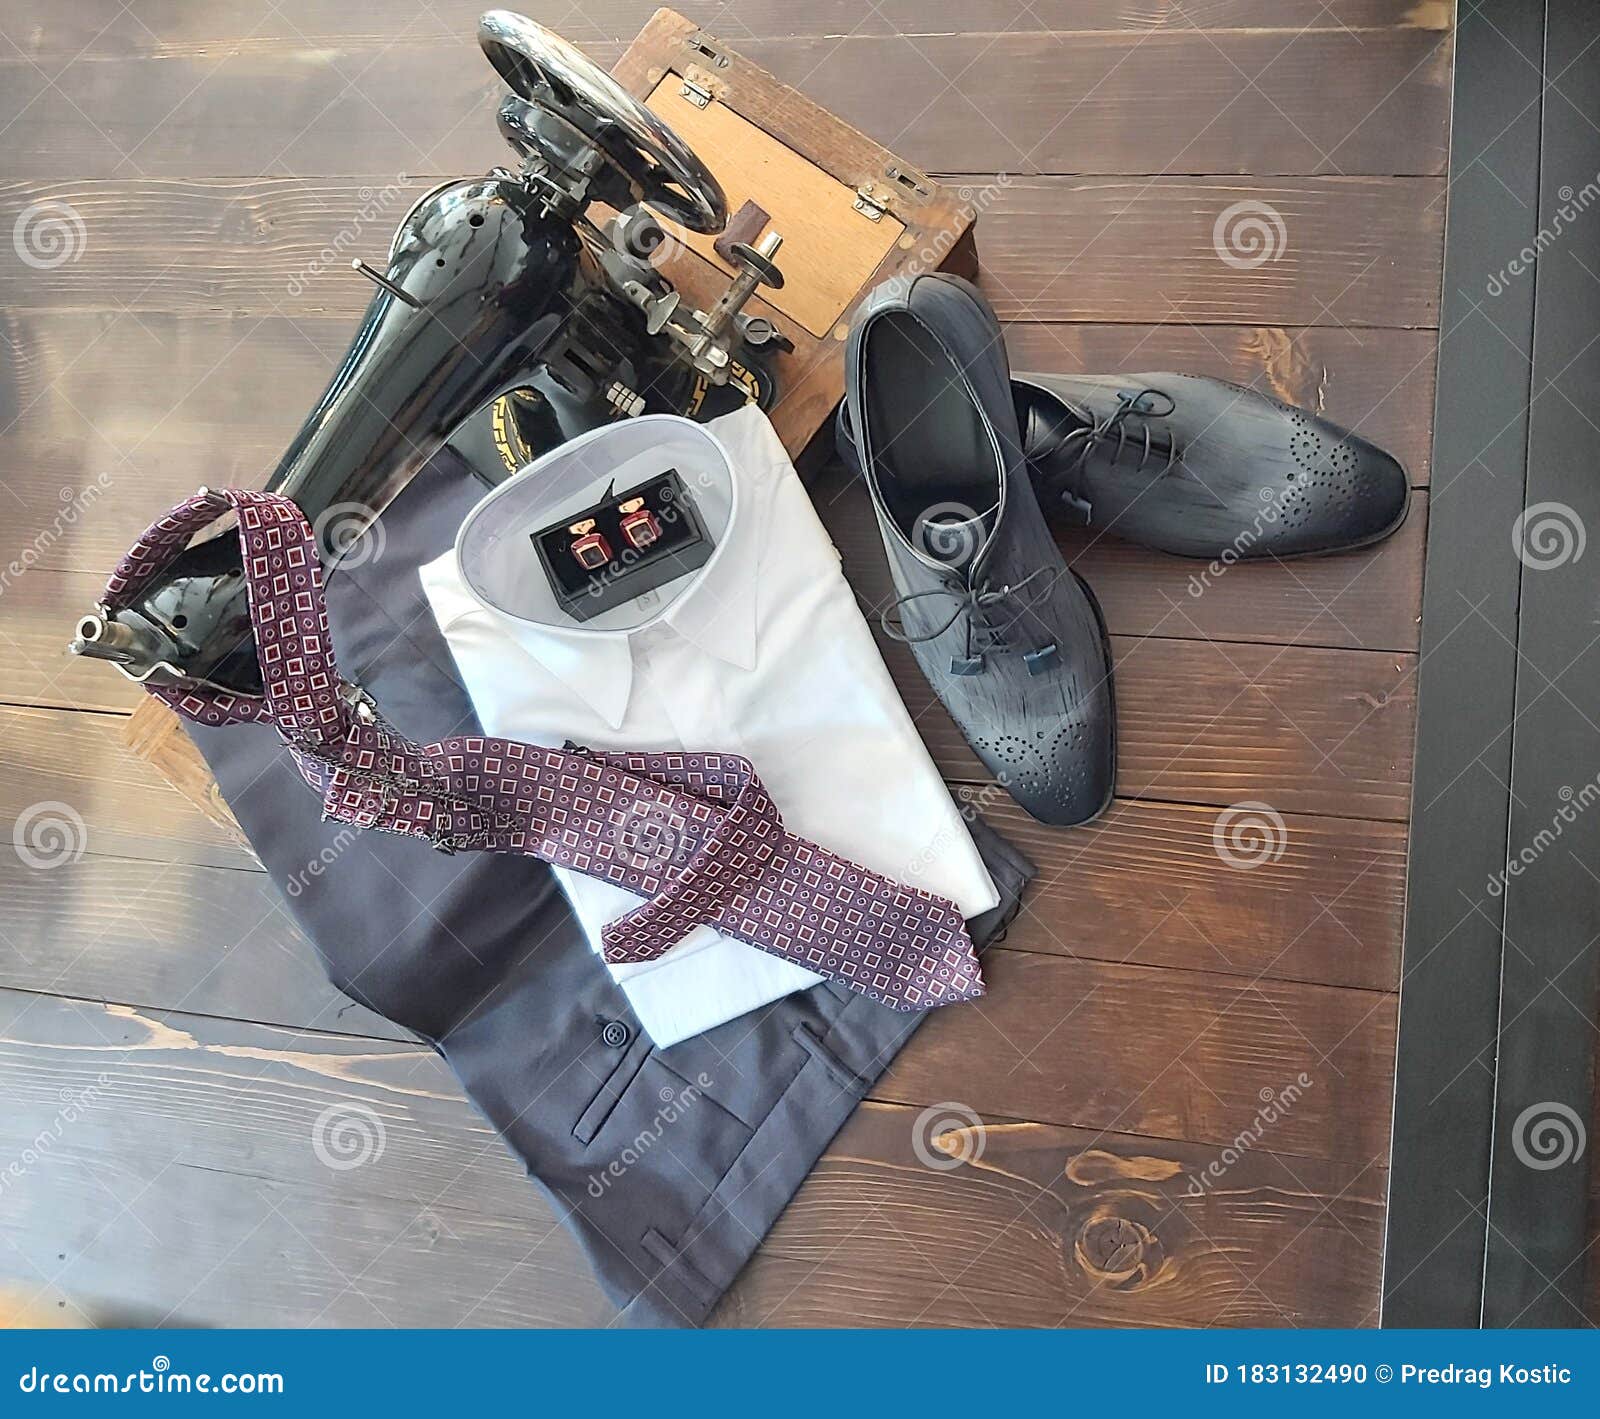 συνδυασμός ανδρικών ρούχων σε ένα παλιό γκρι πουκάμισο και αντρικά  παπούτσια με γραβάτα. Στοκ Εικόνες - εικόνα από : 183132490